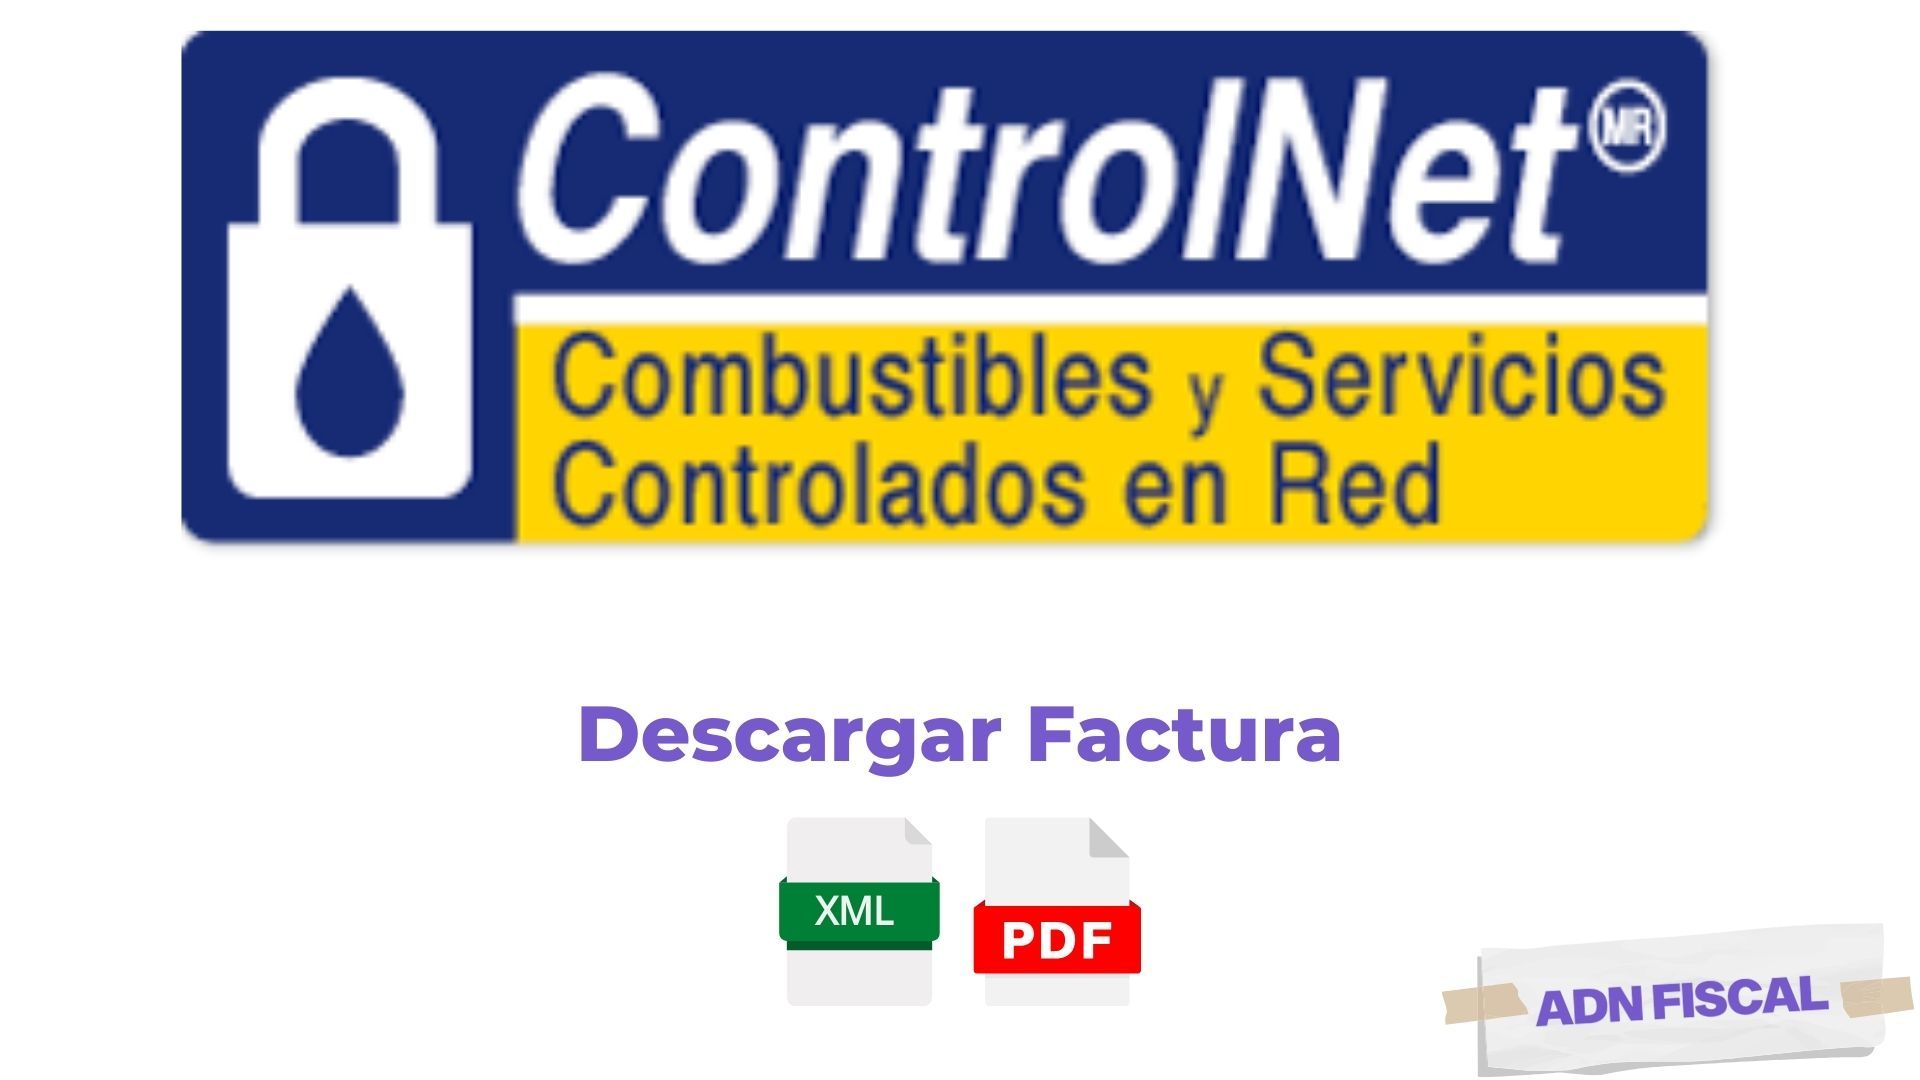 Facturacion ControlNet Gasolineras ⛽ ADN Fiscal